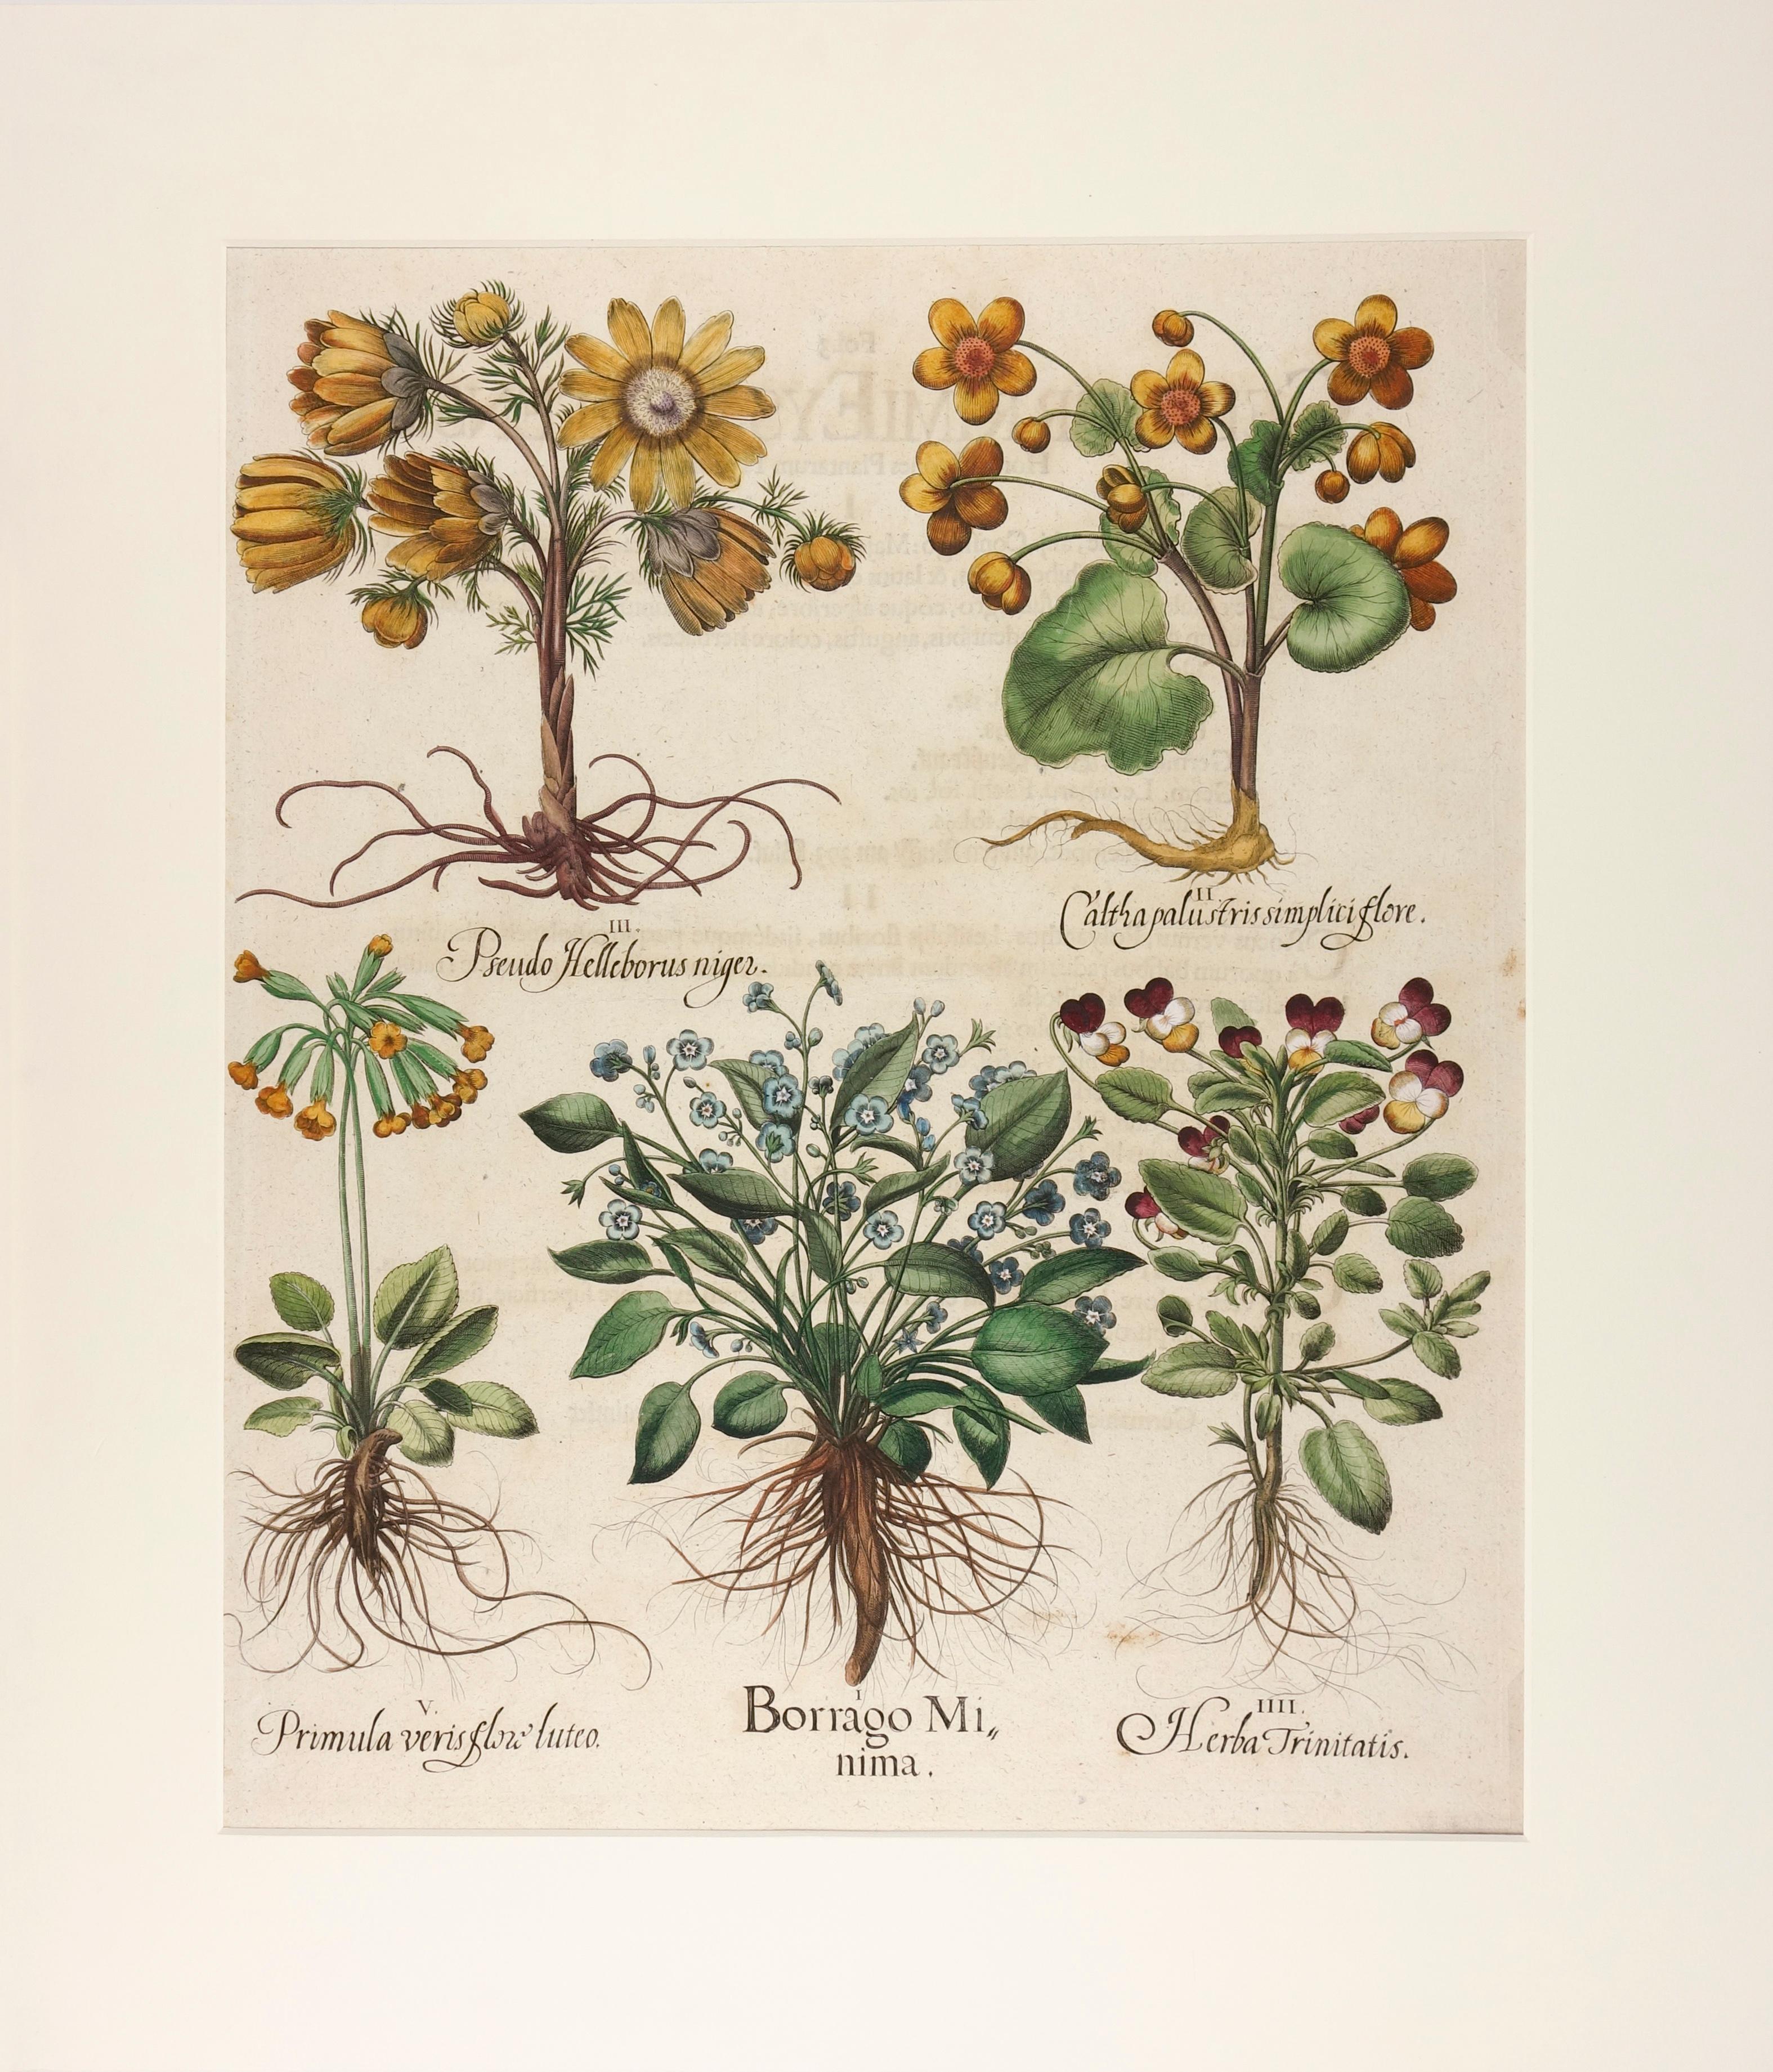 (After) Basilius Besler Still-Life Print -  Basilius Besler Hand-Colored Floral Engraving